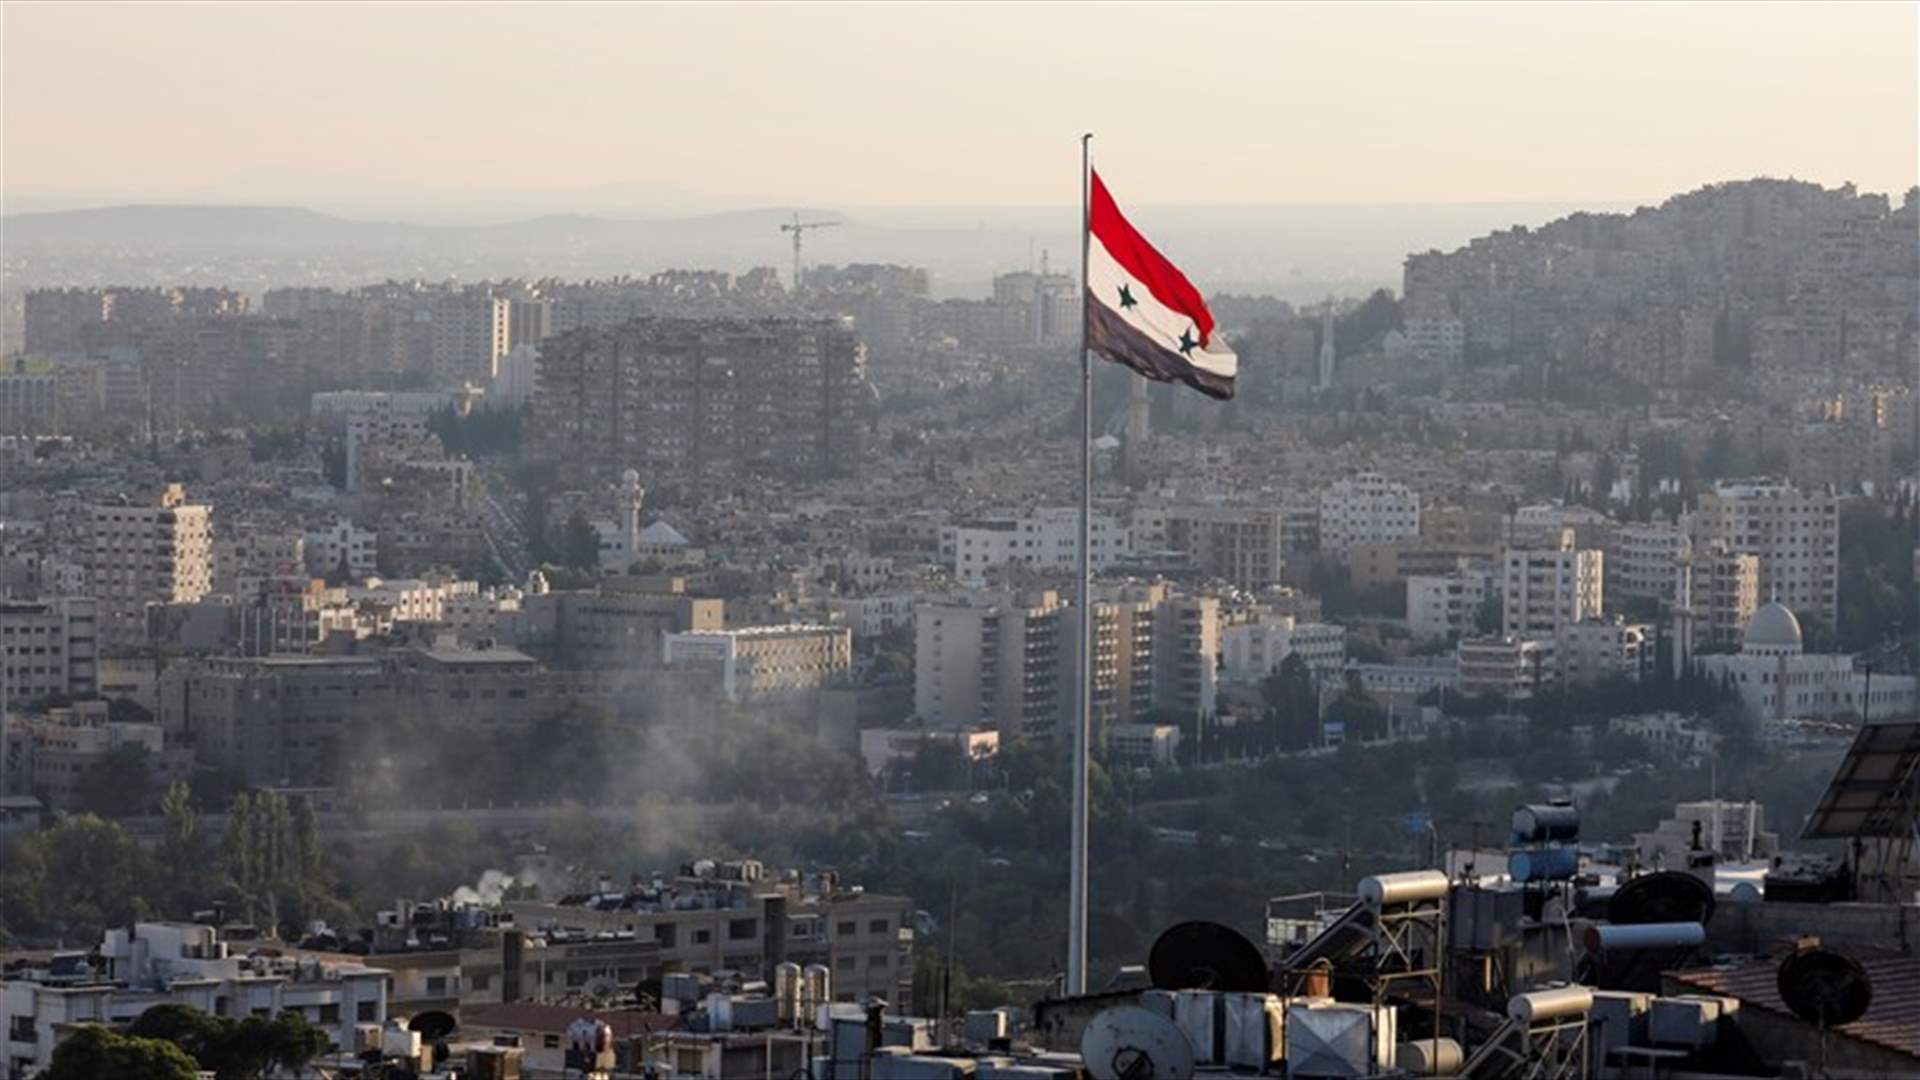 دمشق تتهم إسرائيل بقتل عضو سابق في البرلمان السوري